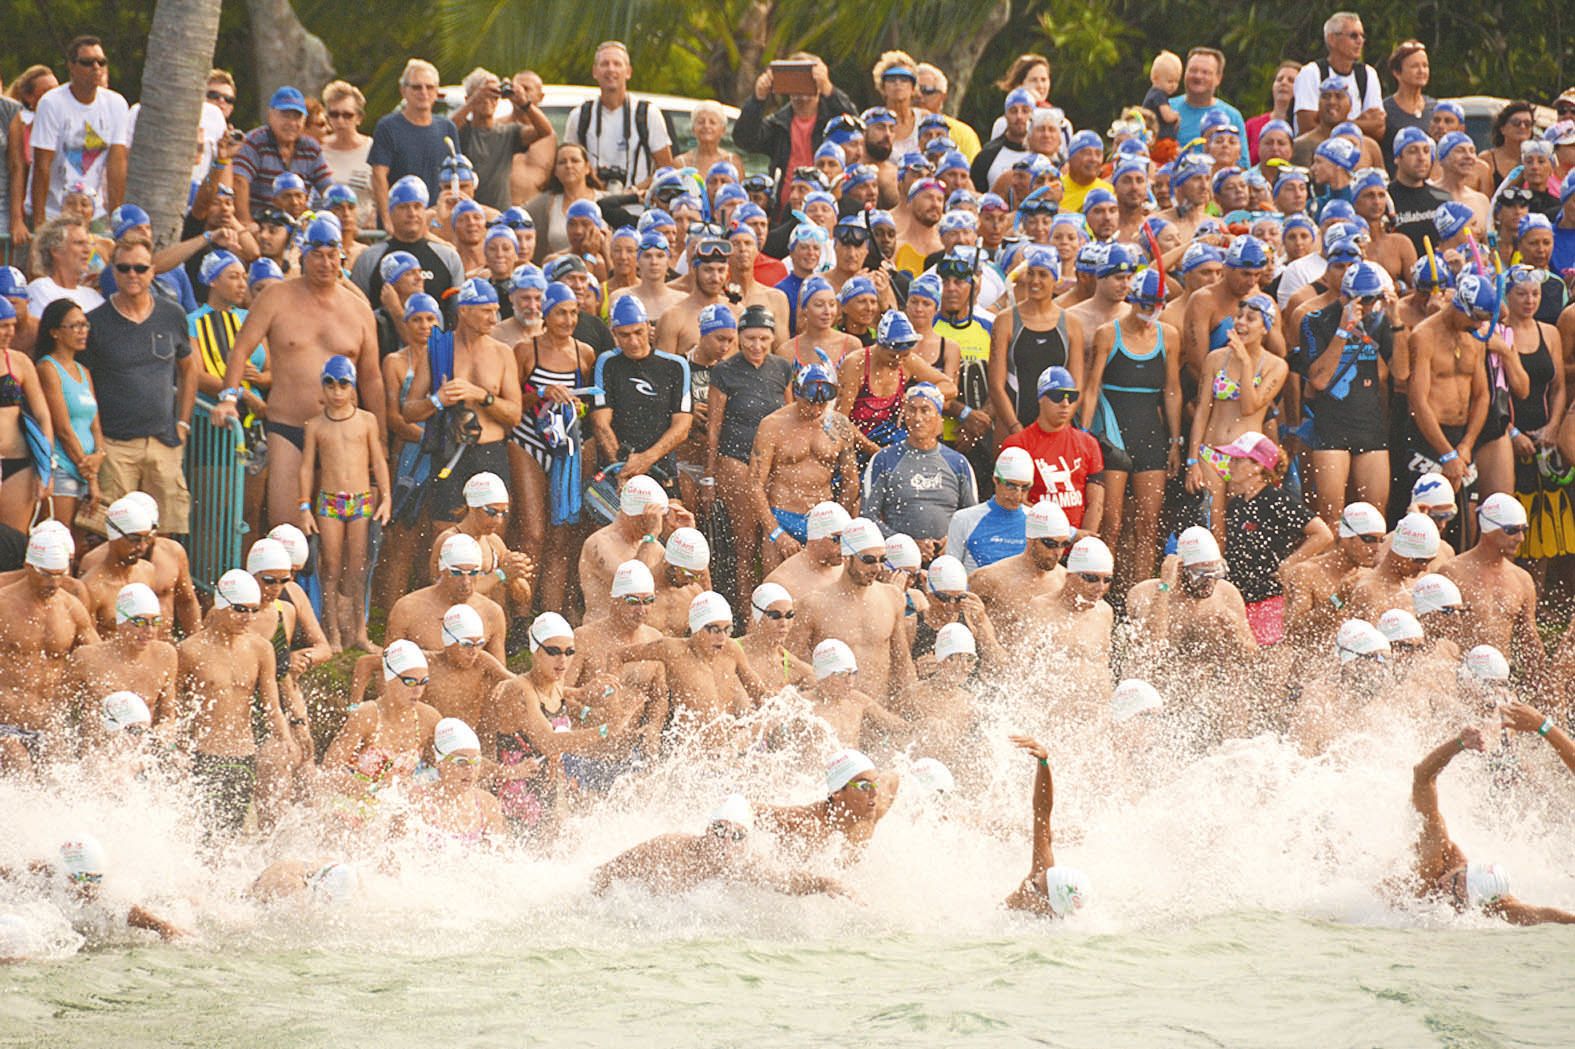 Le record de participants date de 2009 avec 603 nageurs. Il y en avait une cinquantaine lors de la 1re édition.